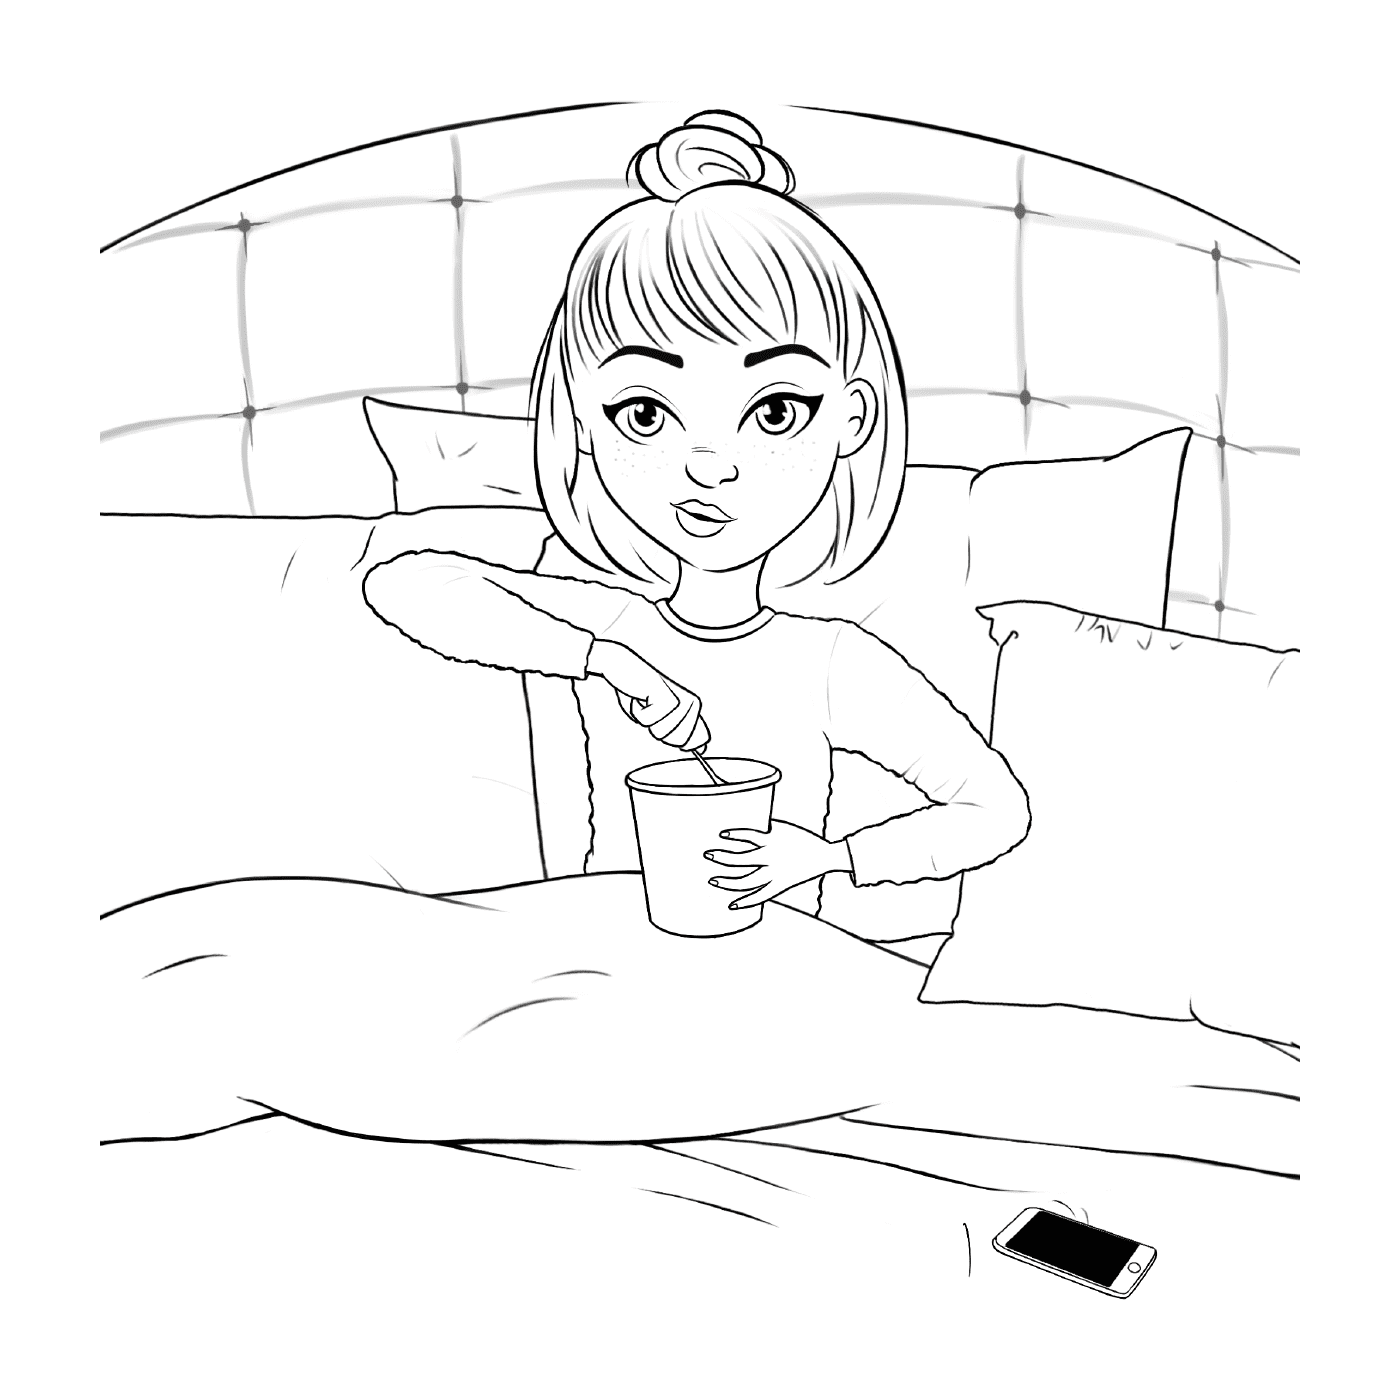   Fille adolescente au lit avec une glace 